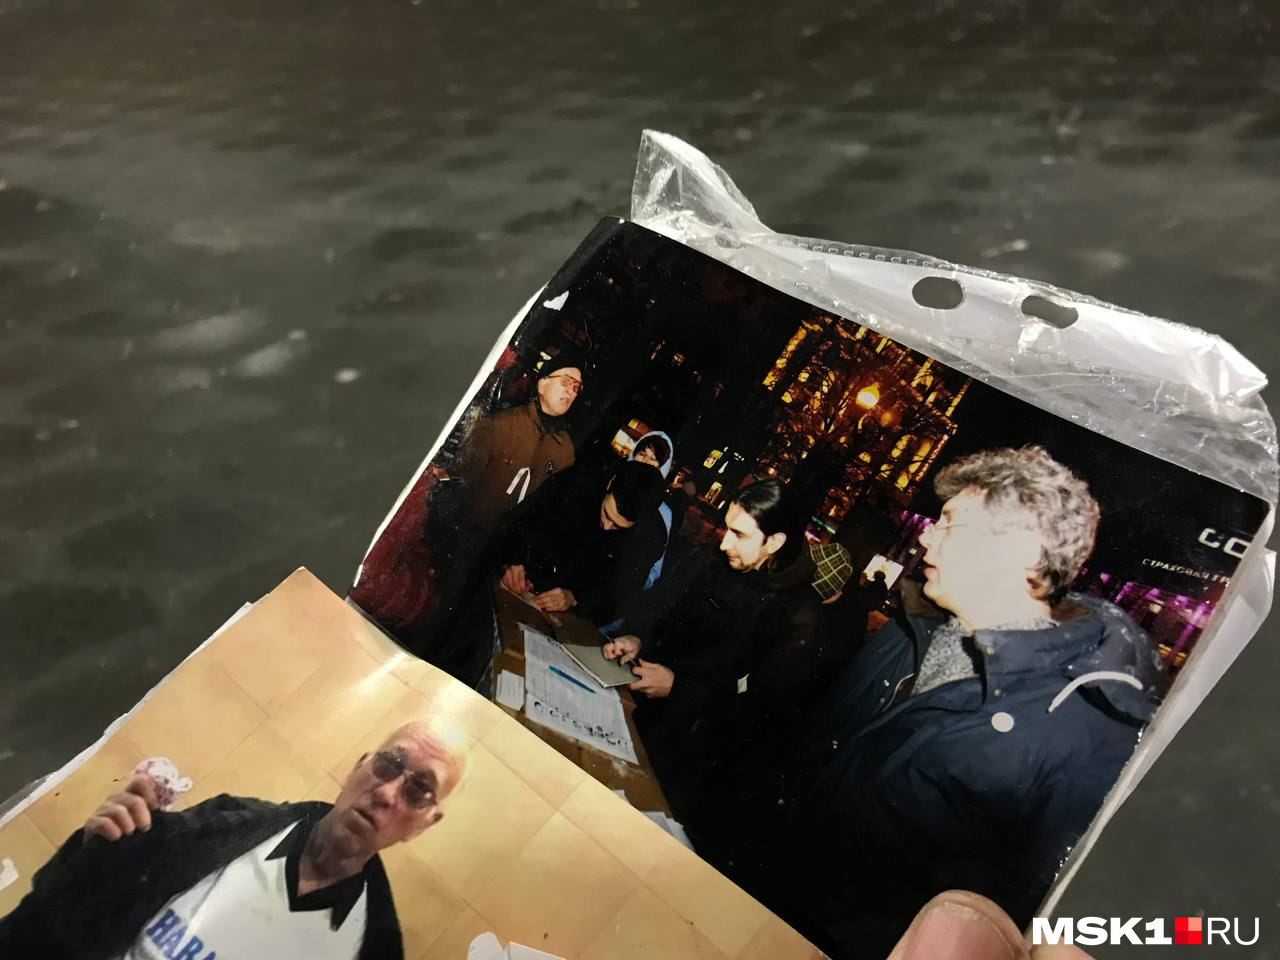 Многие из вахтовиков, которые до сих пор несут свою личную вахту памяти на мосту, знали Бориса Немцова лично